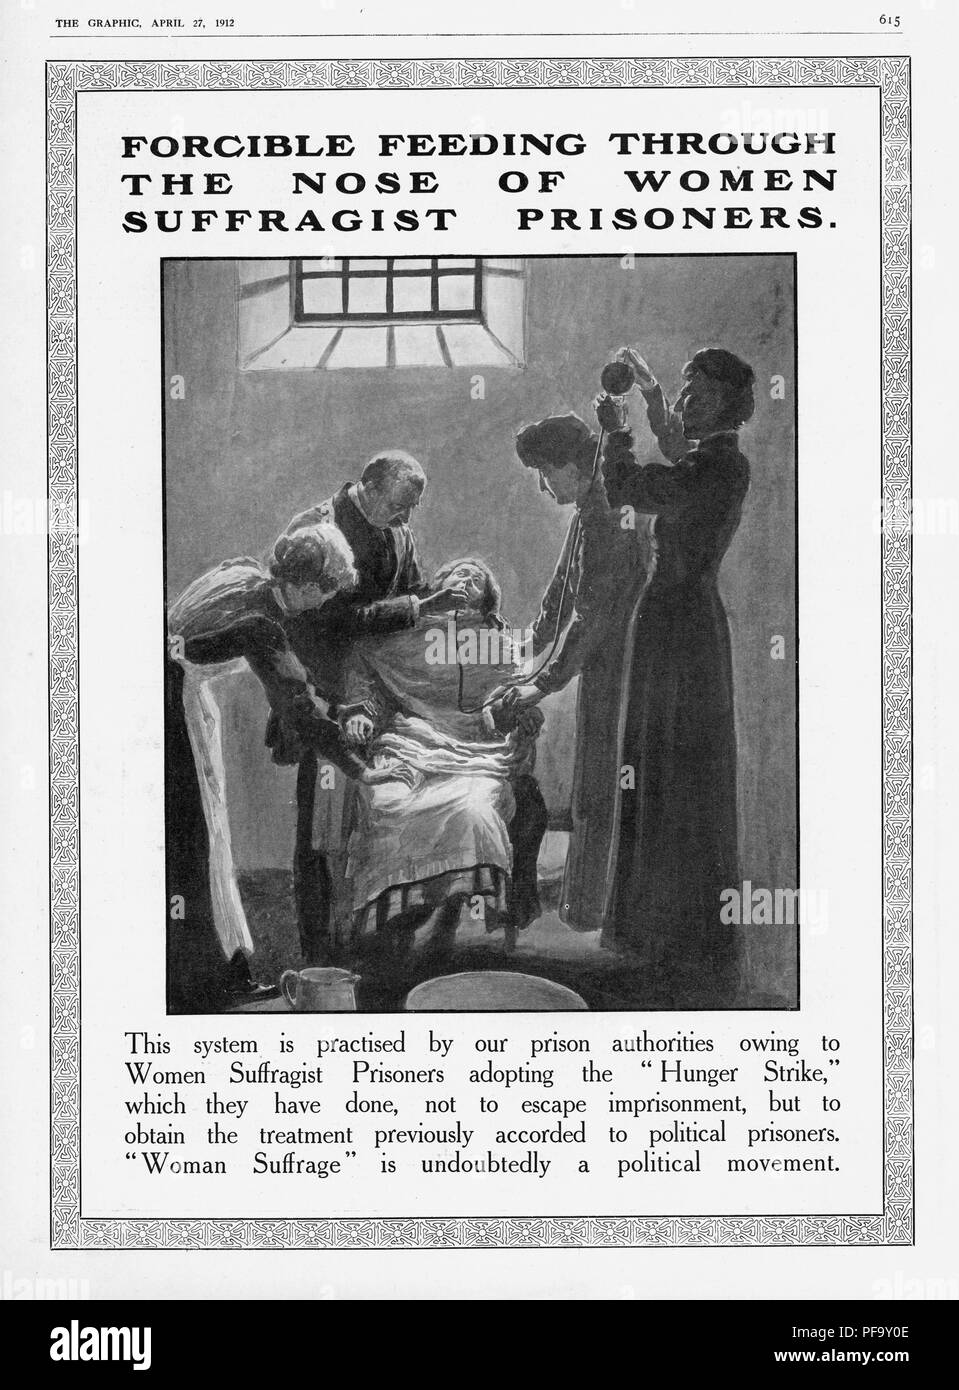 Schwarz-weiß Drucken, zeigt eine Frau gefangen in einem Stuhl und Kraft zurückhaltende - durch ein Rohr in Ihrem Nasenloch zugeführt, die Schrecken des gewaltsamen Fütterung von Wahlrecht Hungerstreikenden veranschaulichen, indem Sie die Grafik für den britischen Markt veröffentlicht, 27. April 1912. () Stockfoto